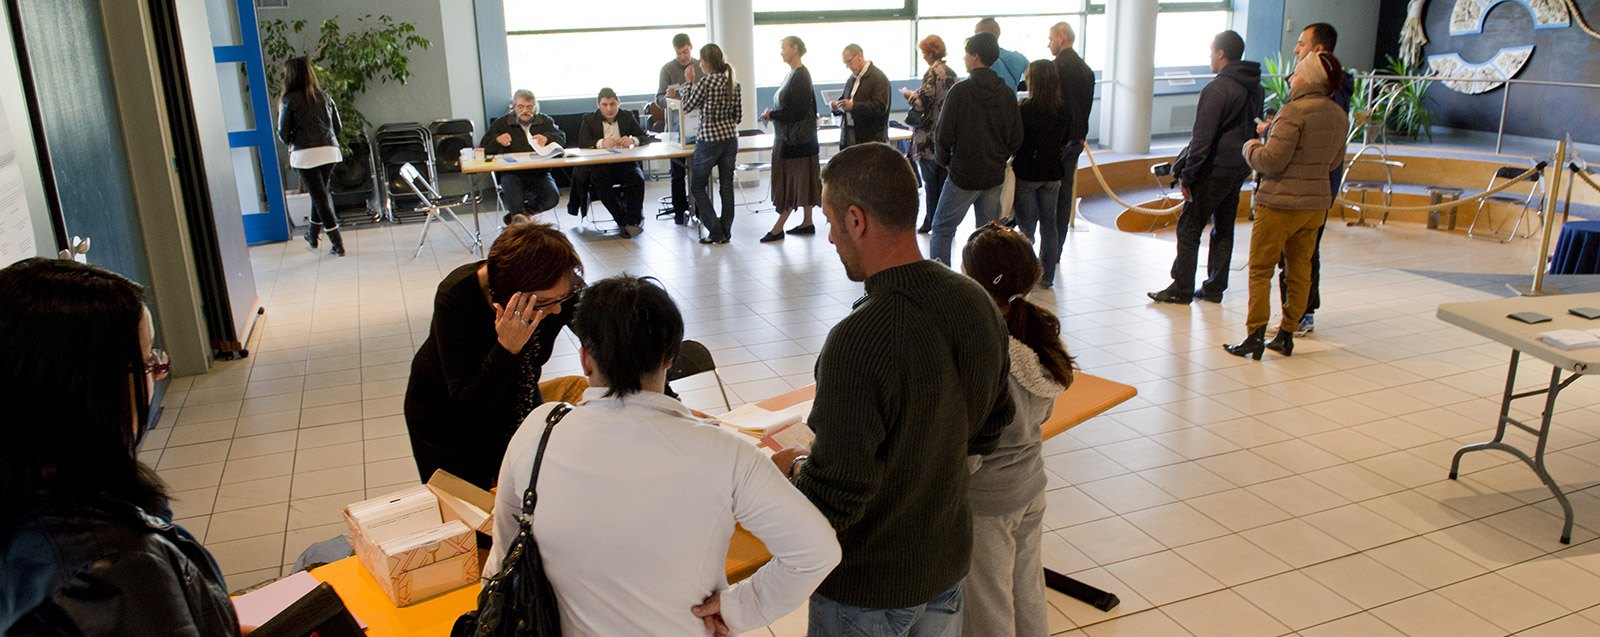 Bureau de vote élections Villefontaine